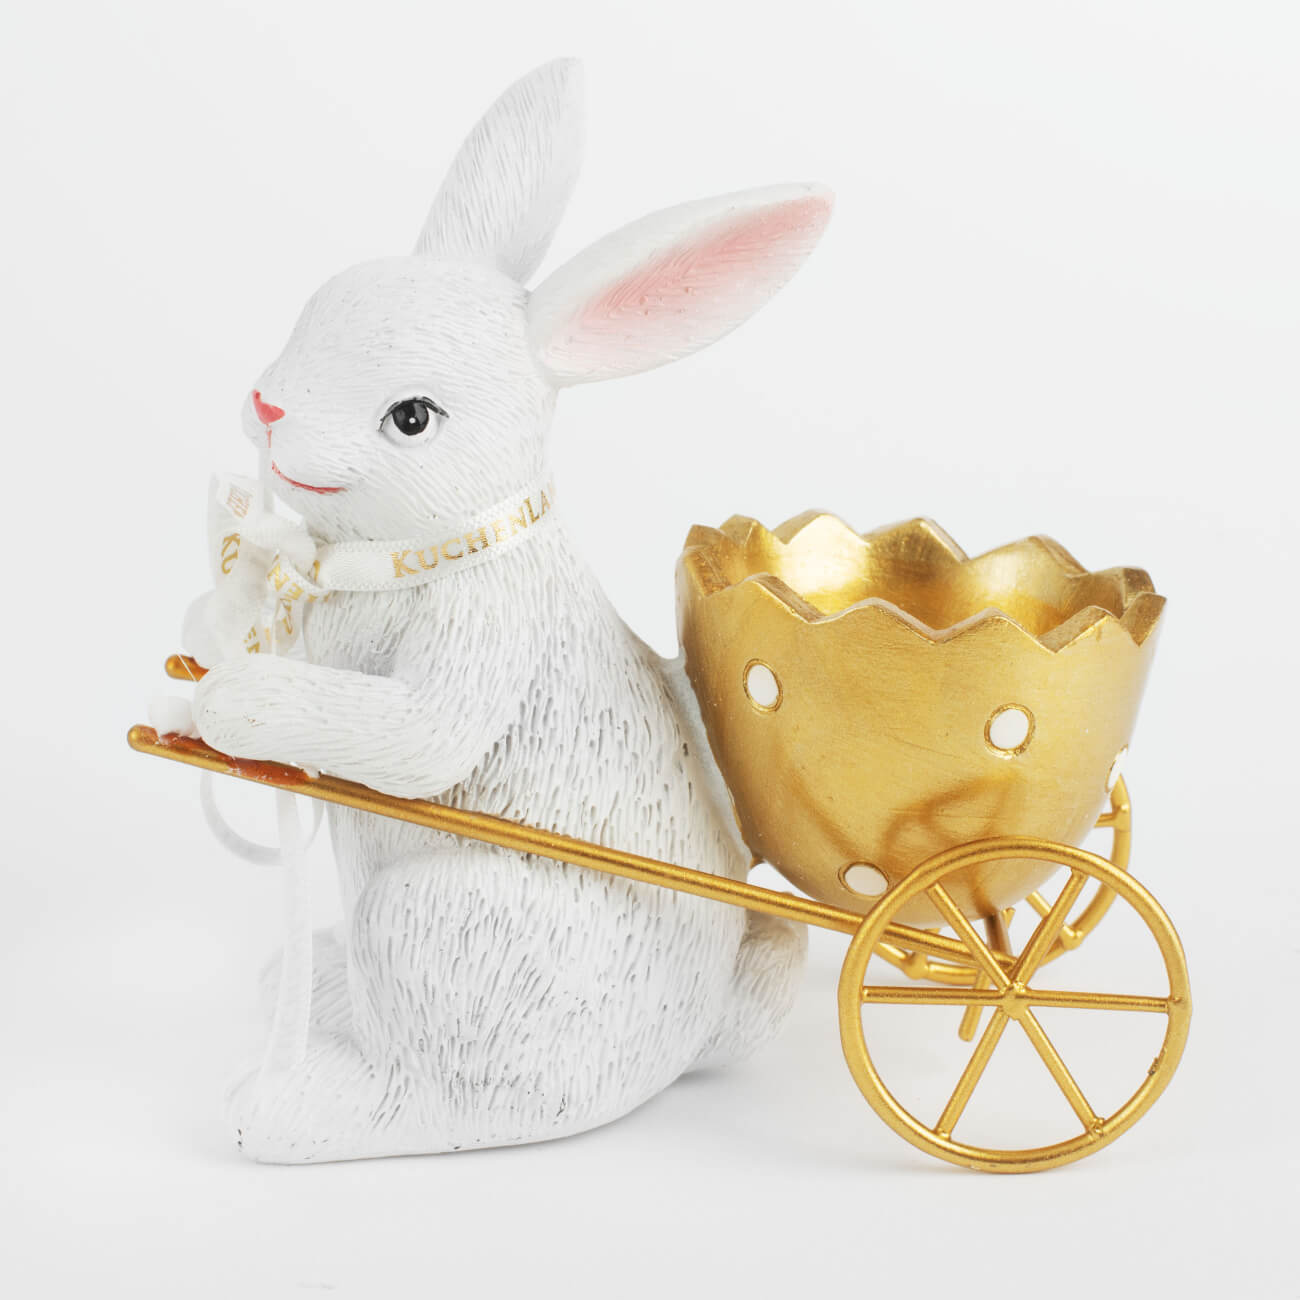 Подставка для яйца, 12 см, полирезин, бело-золотистая, Кролик с тележкой, Easter gold подставка под телефон кролик эйприл айвори